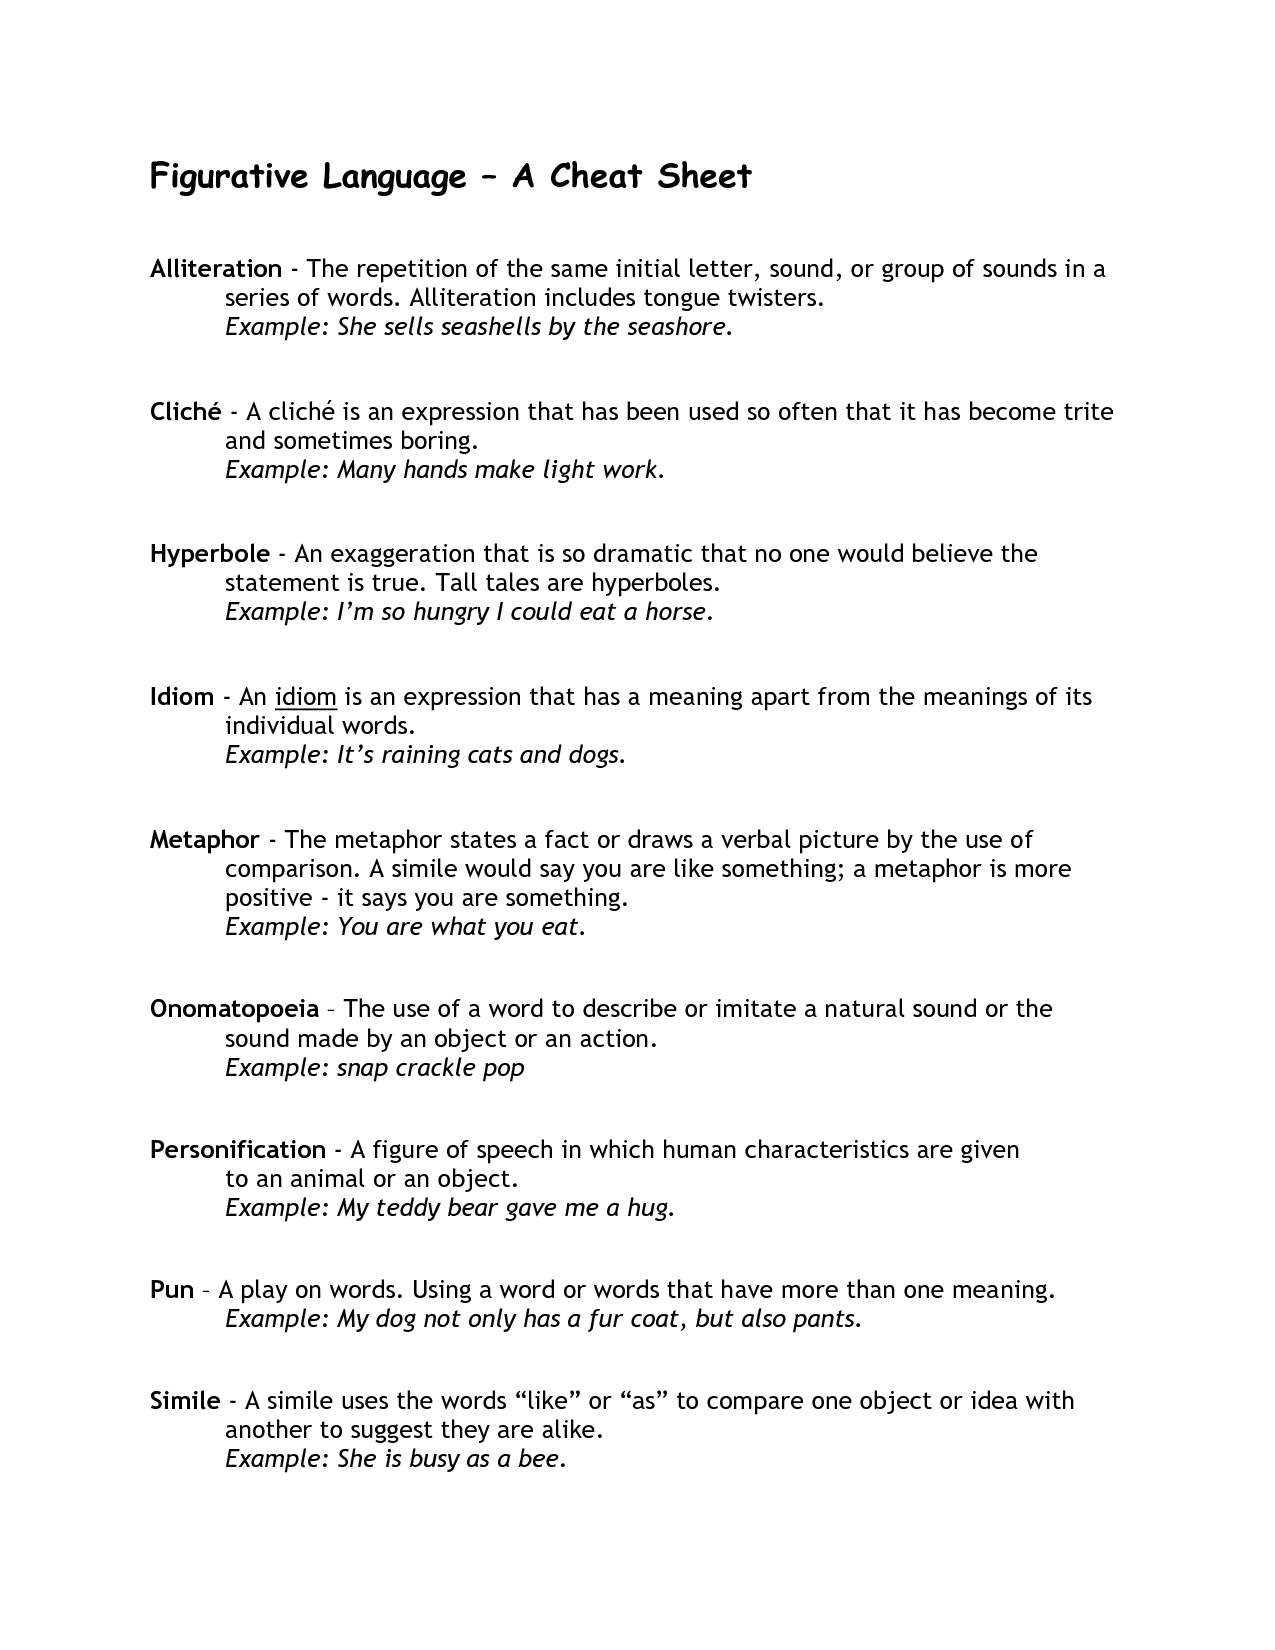 Figurative Language Examples Worksheet Image